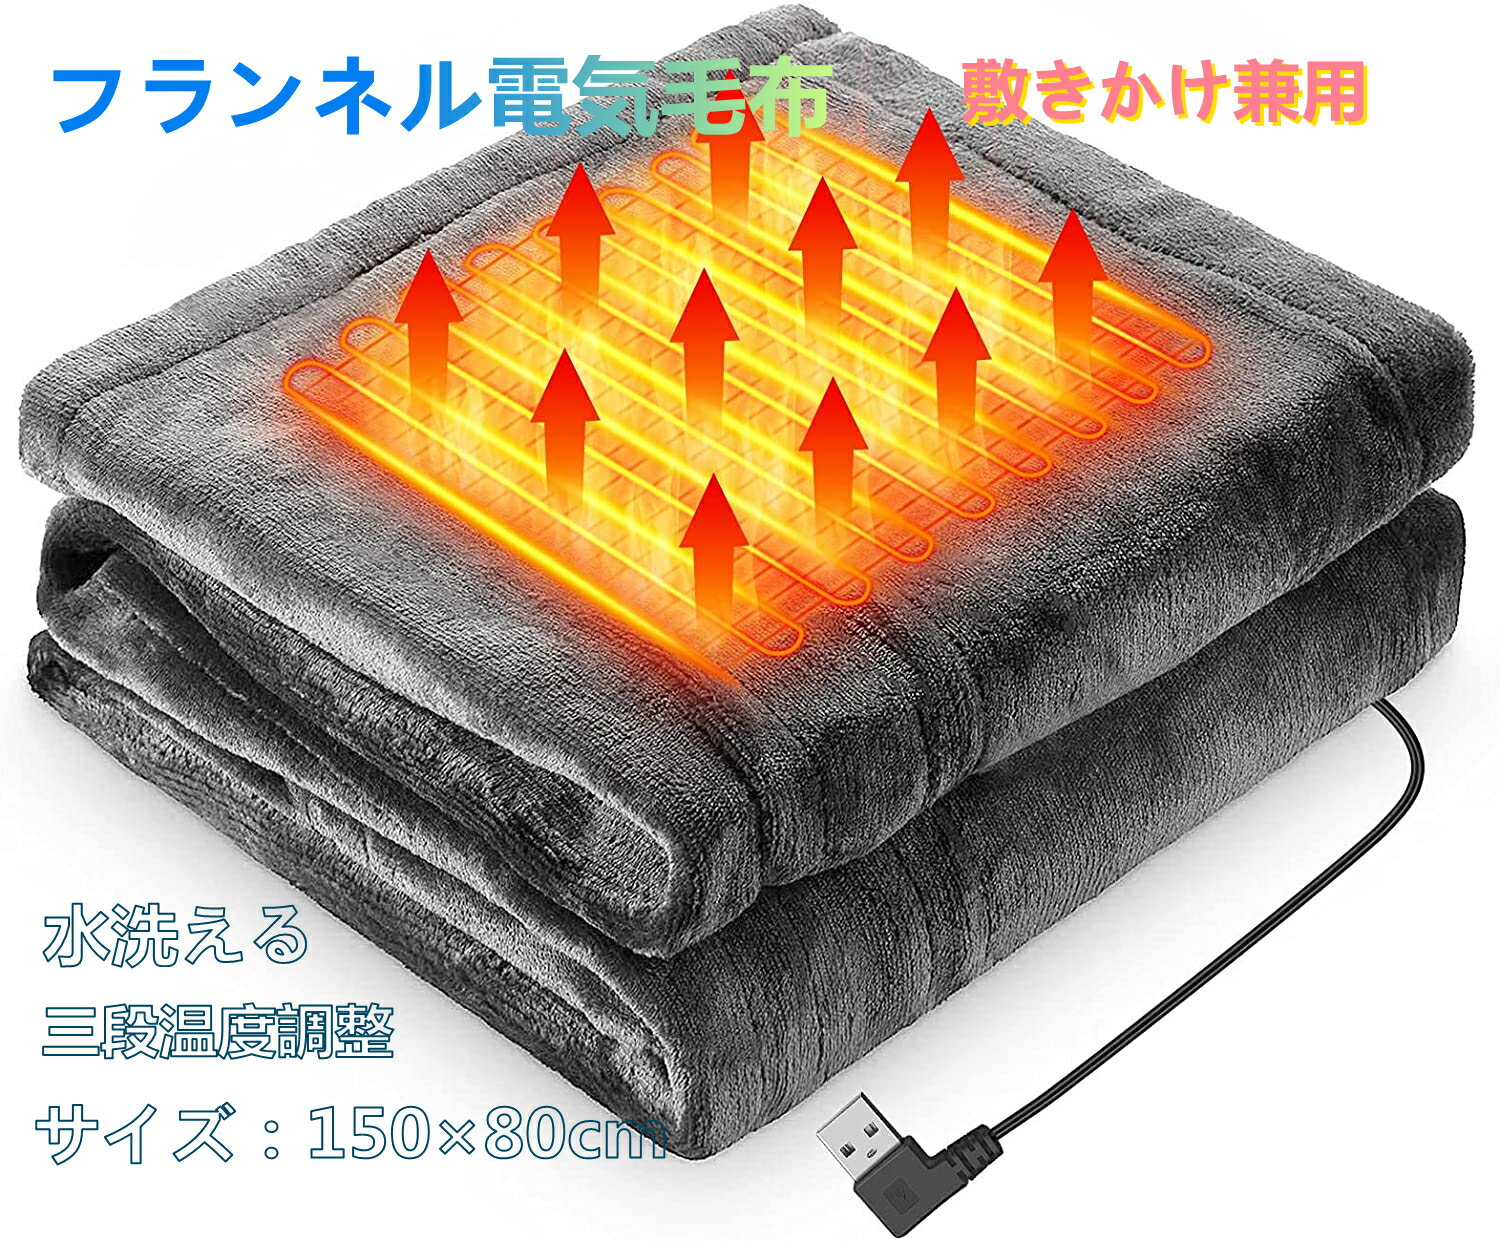 電気毛布 電気ブランケット USBブランケット 8枚の加熱エリア 150cmx80cm フランネル素材 暖かい 3段階温度調整 肩掛…